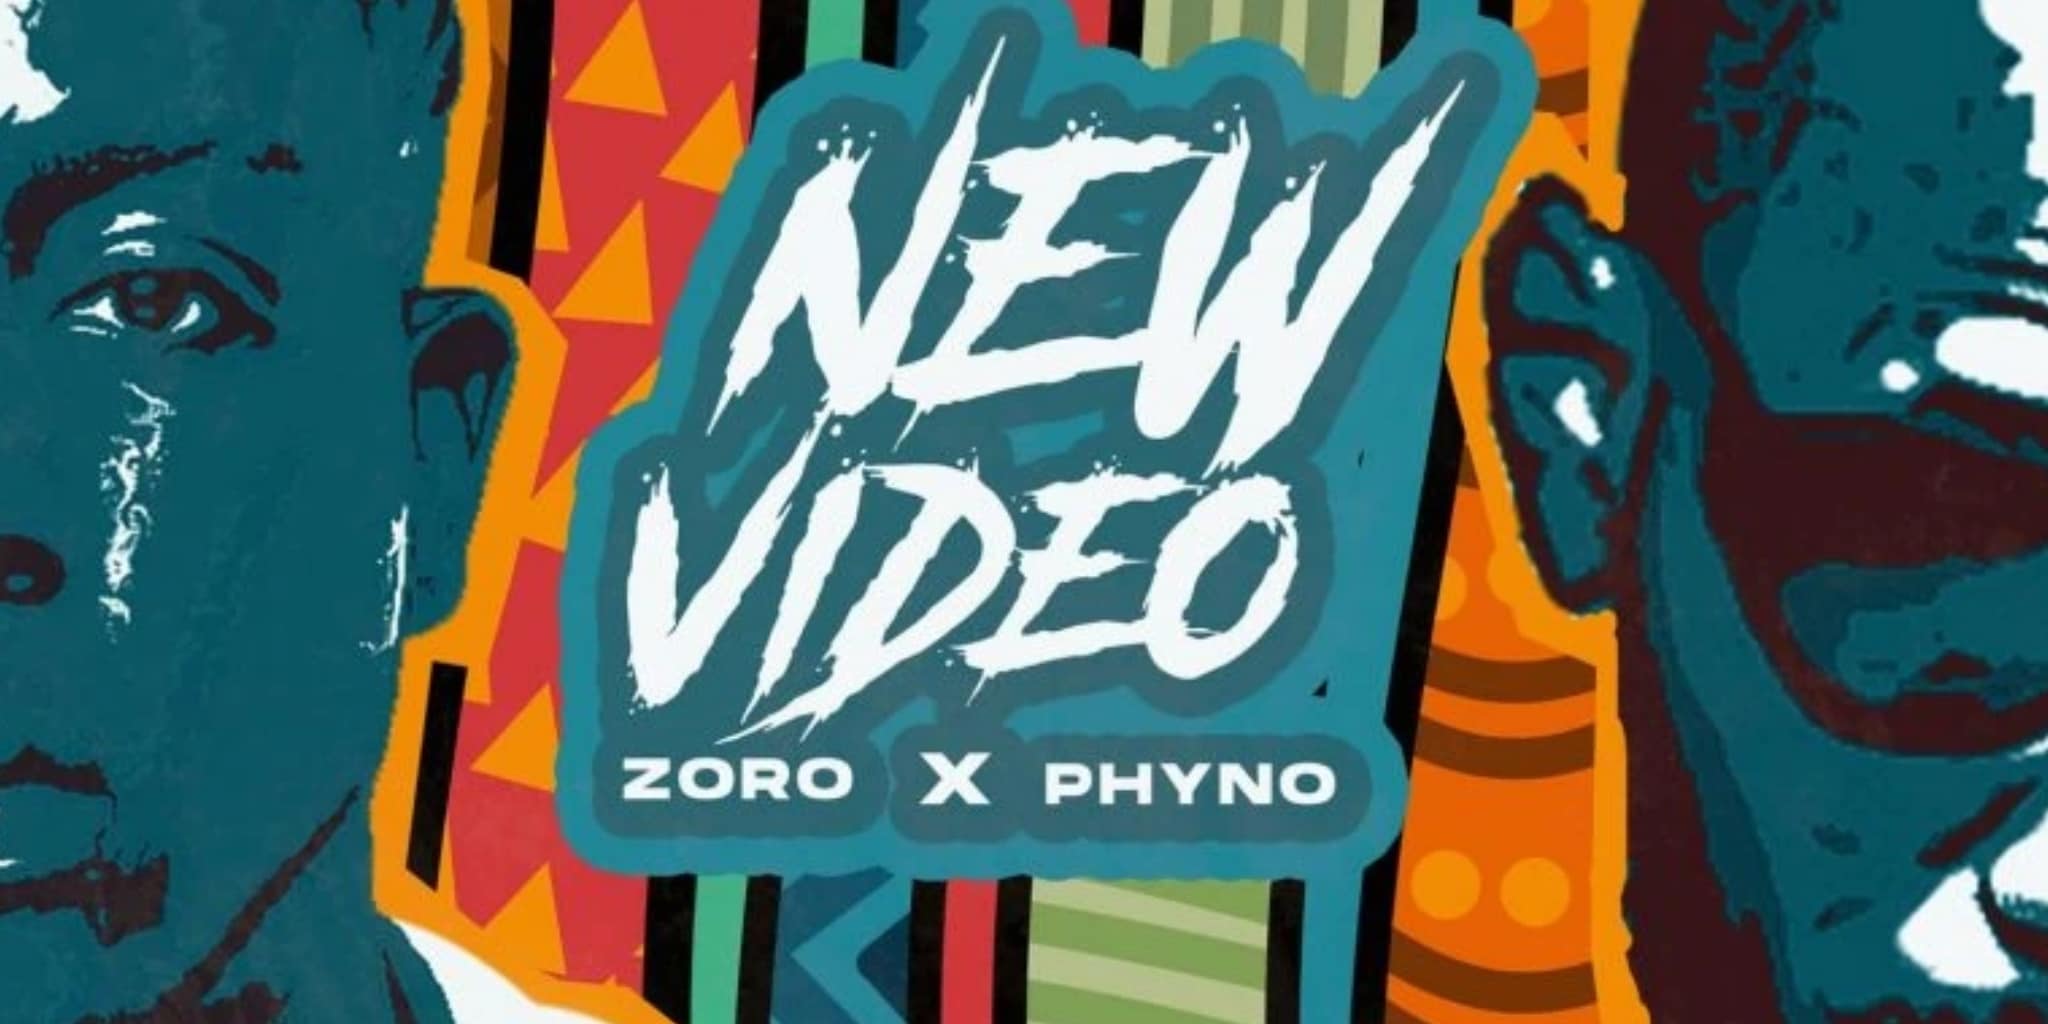 Zoro The Video